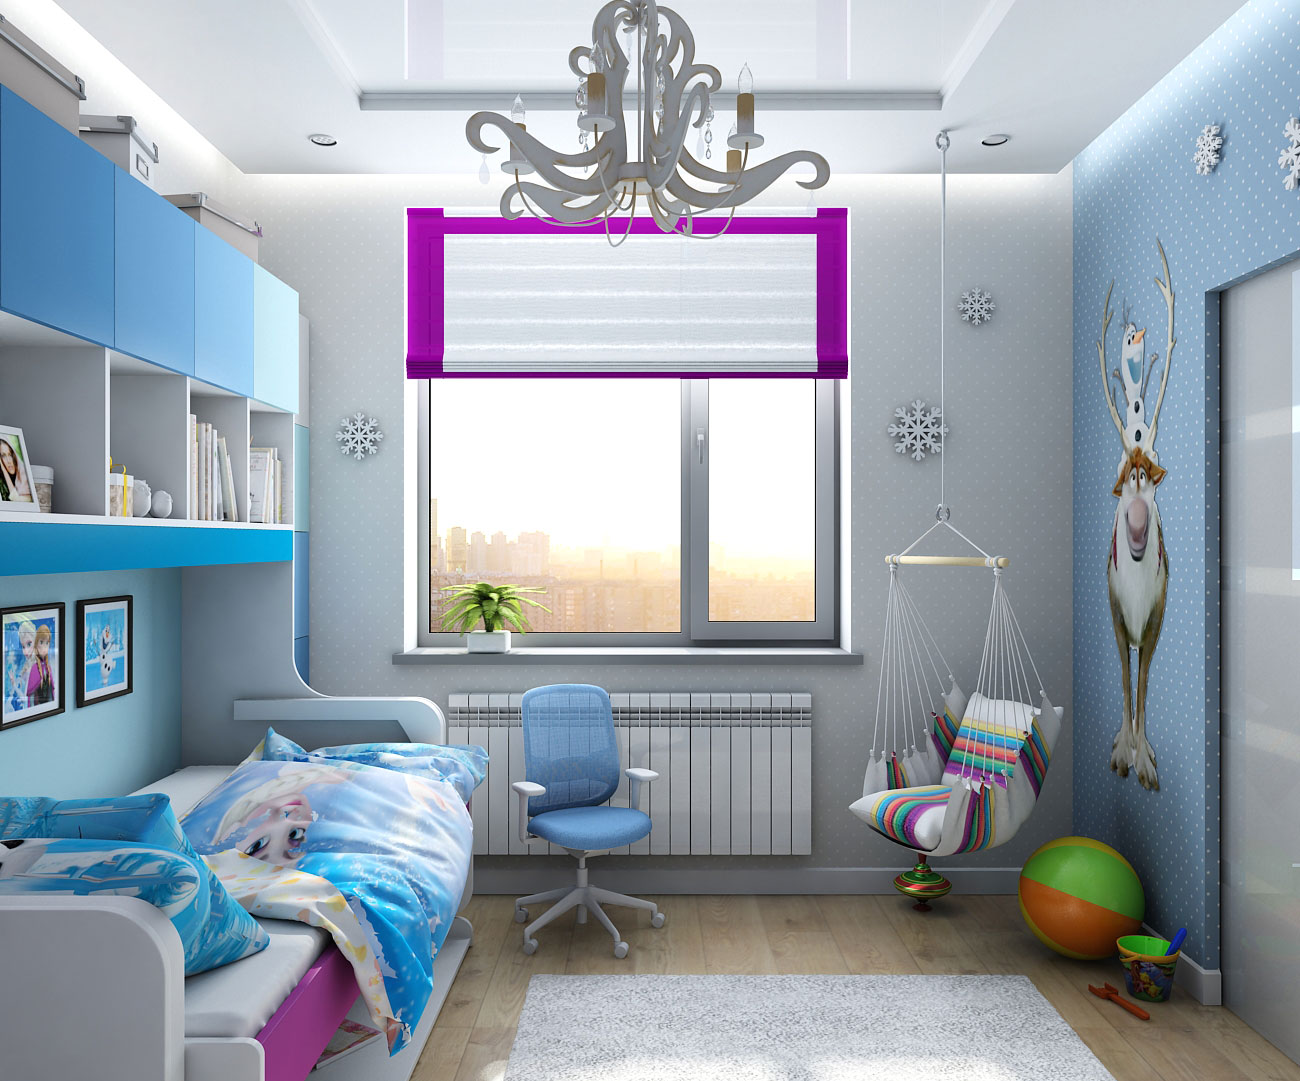 Дизайн интерьера детской в стиле "Frozen" в Чернигове в 3d max vray 1.5 изображение